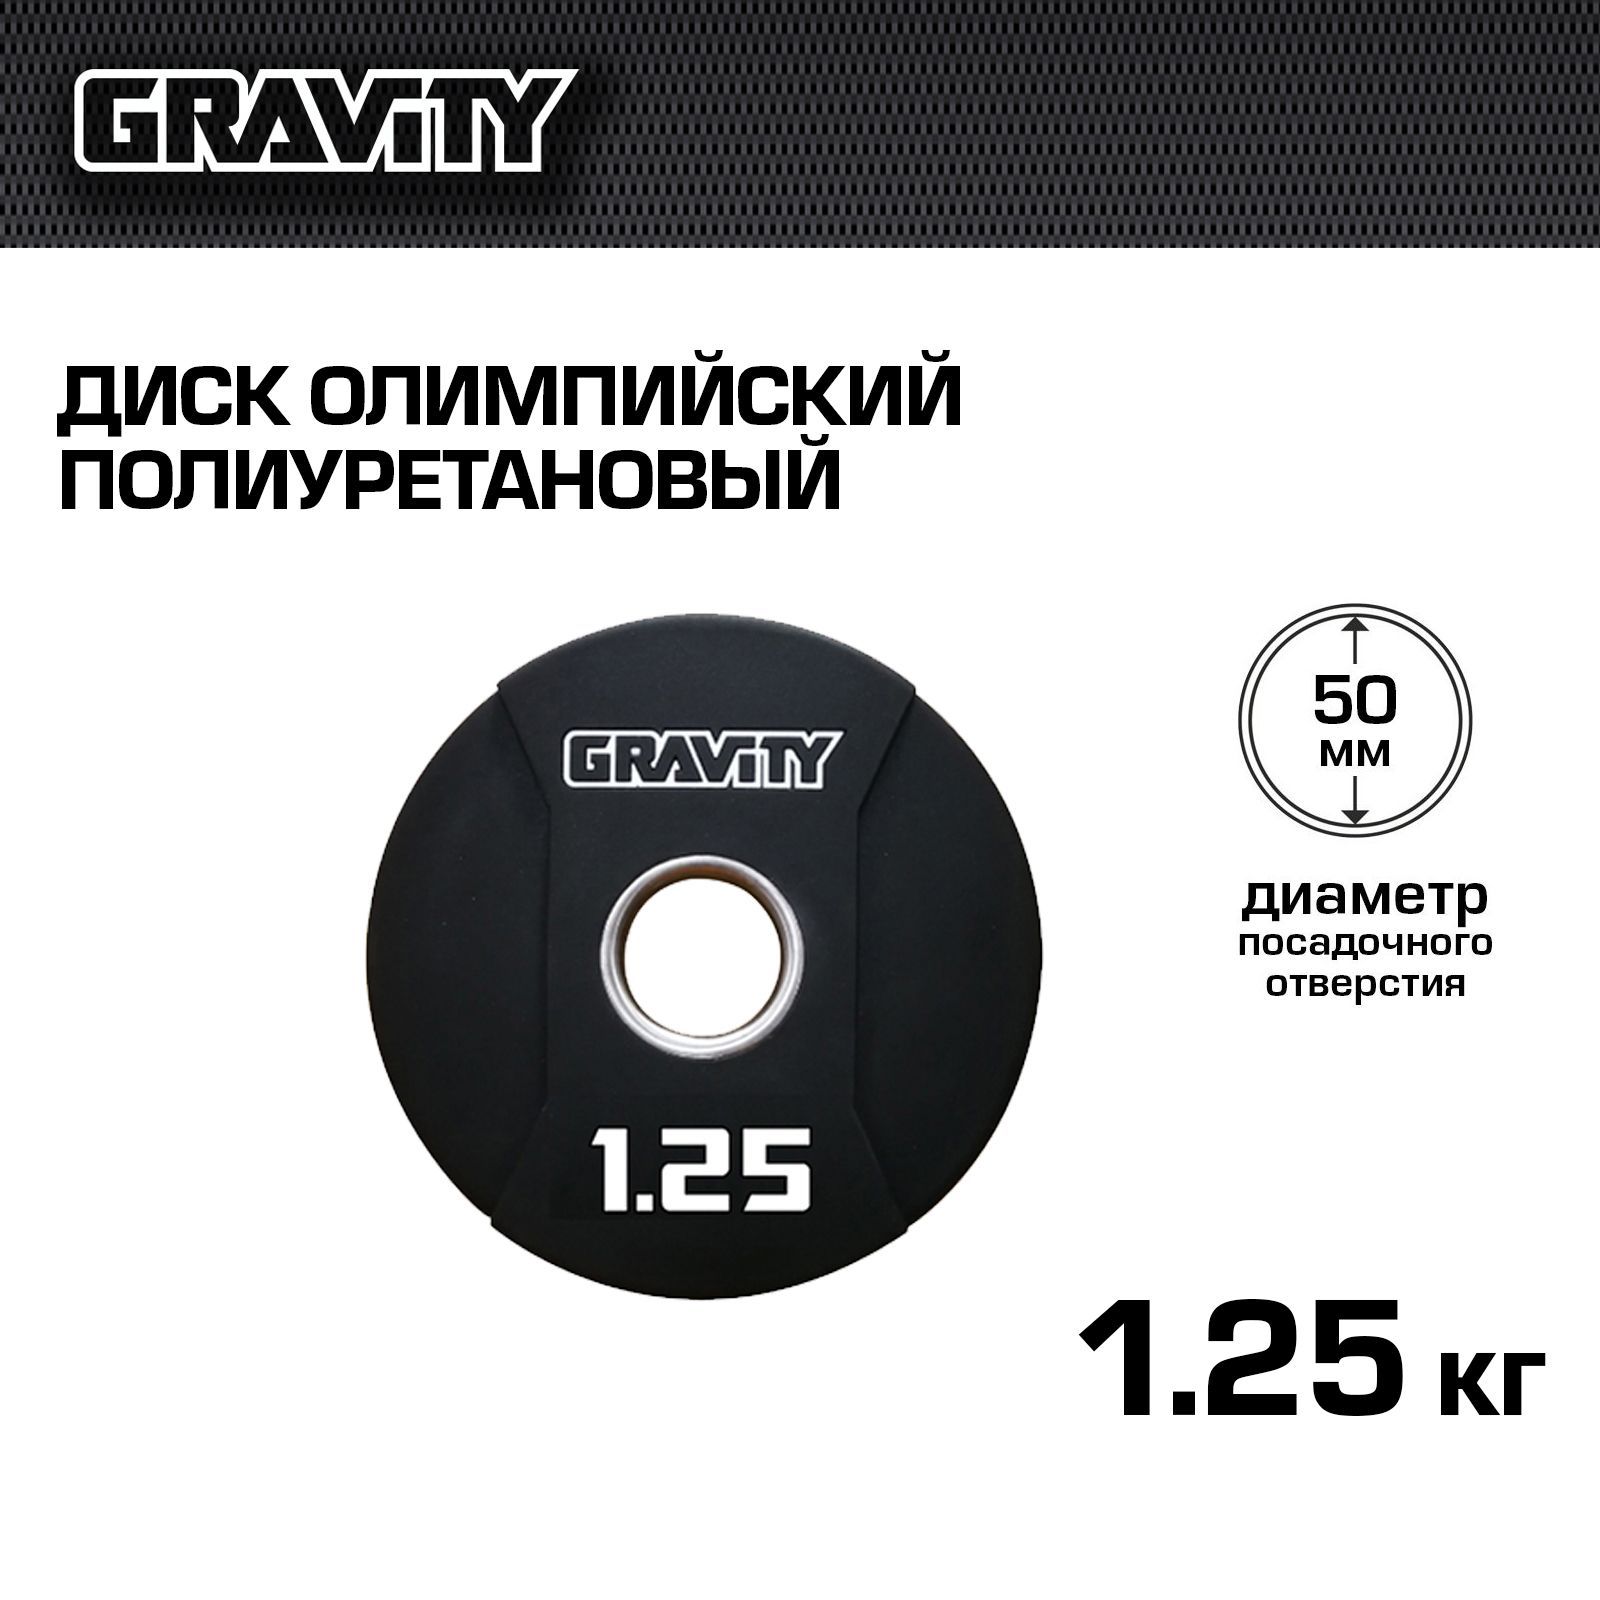 Диск олимпийский полиуретановый Gravity, 1,25 кг